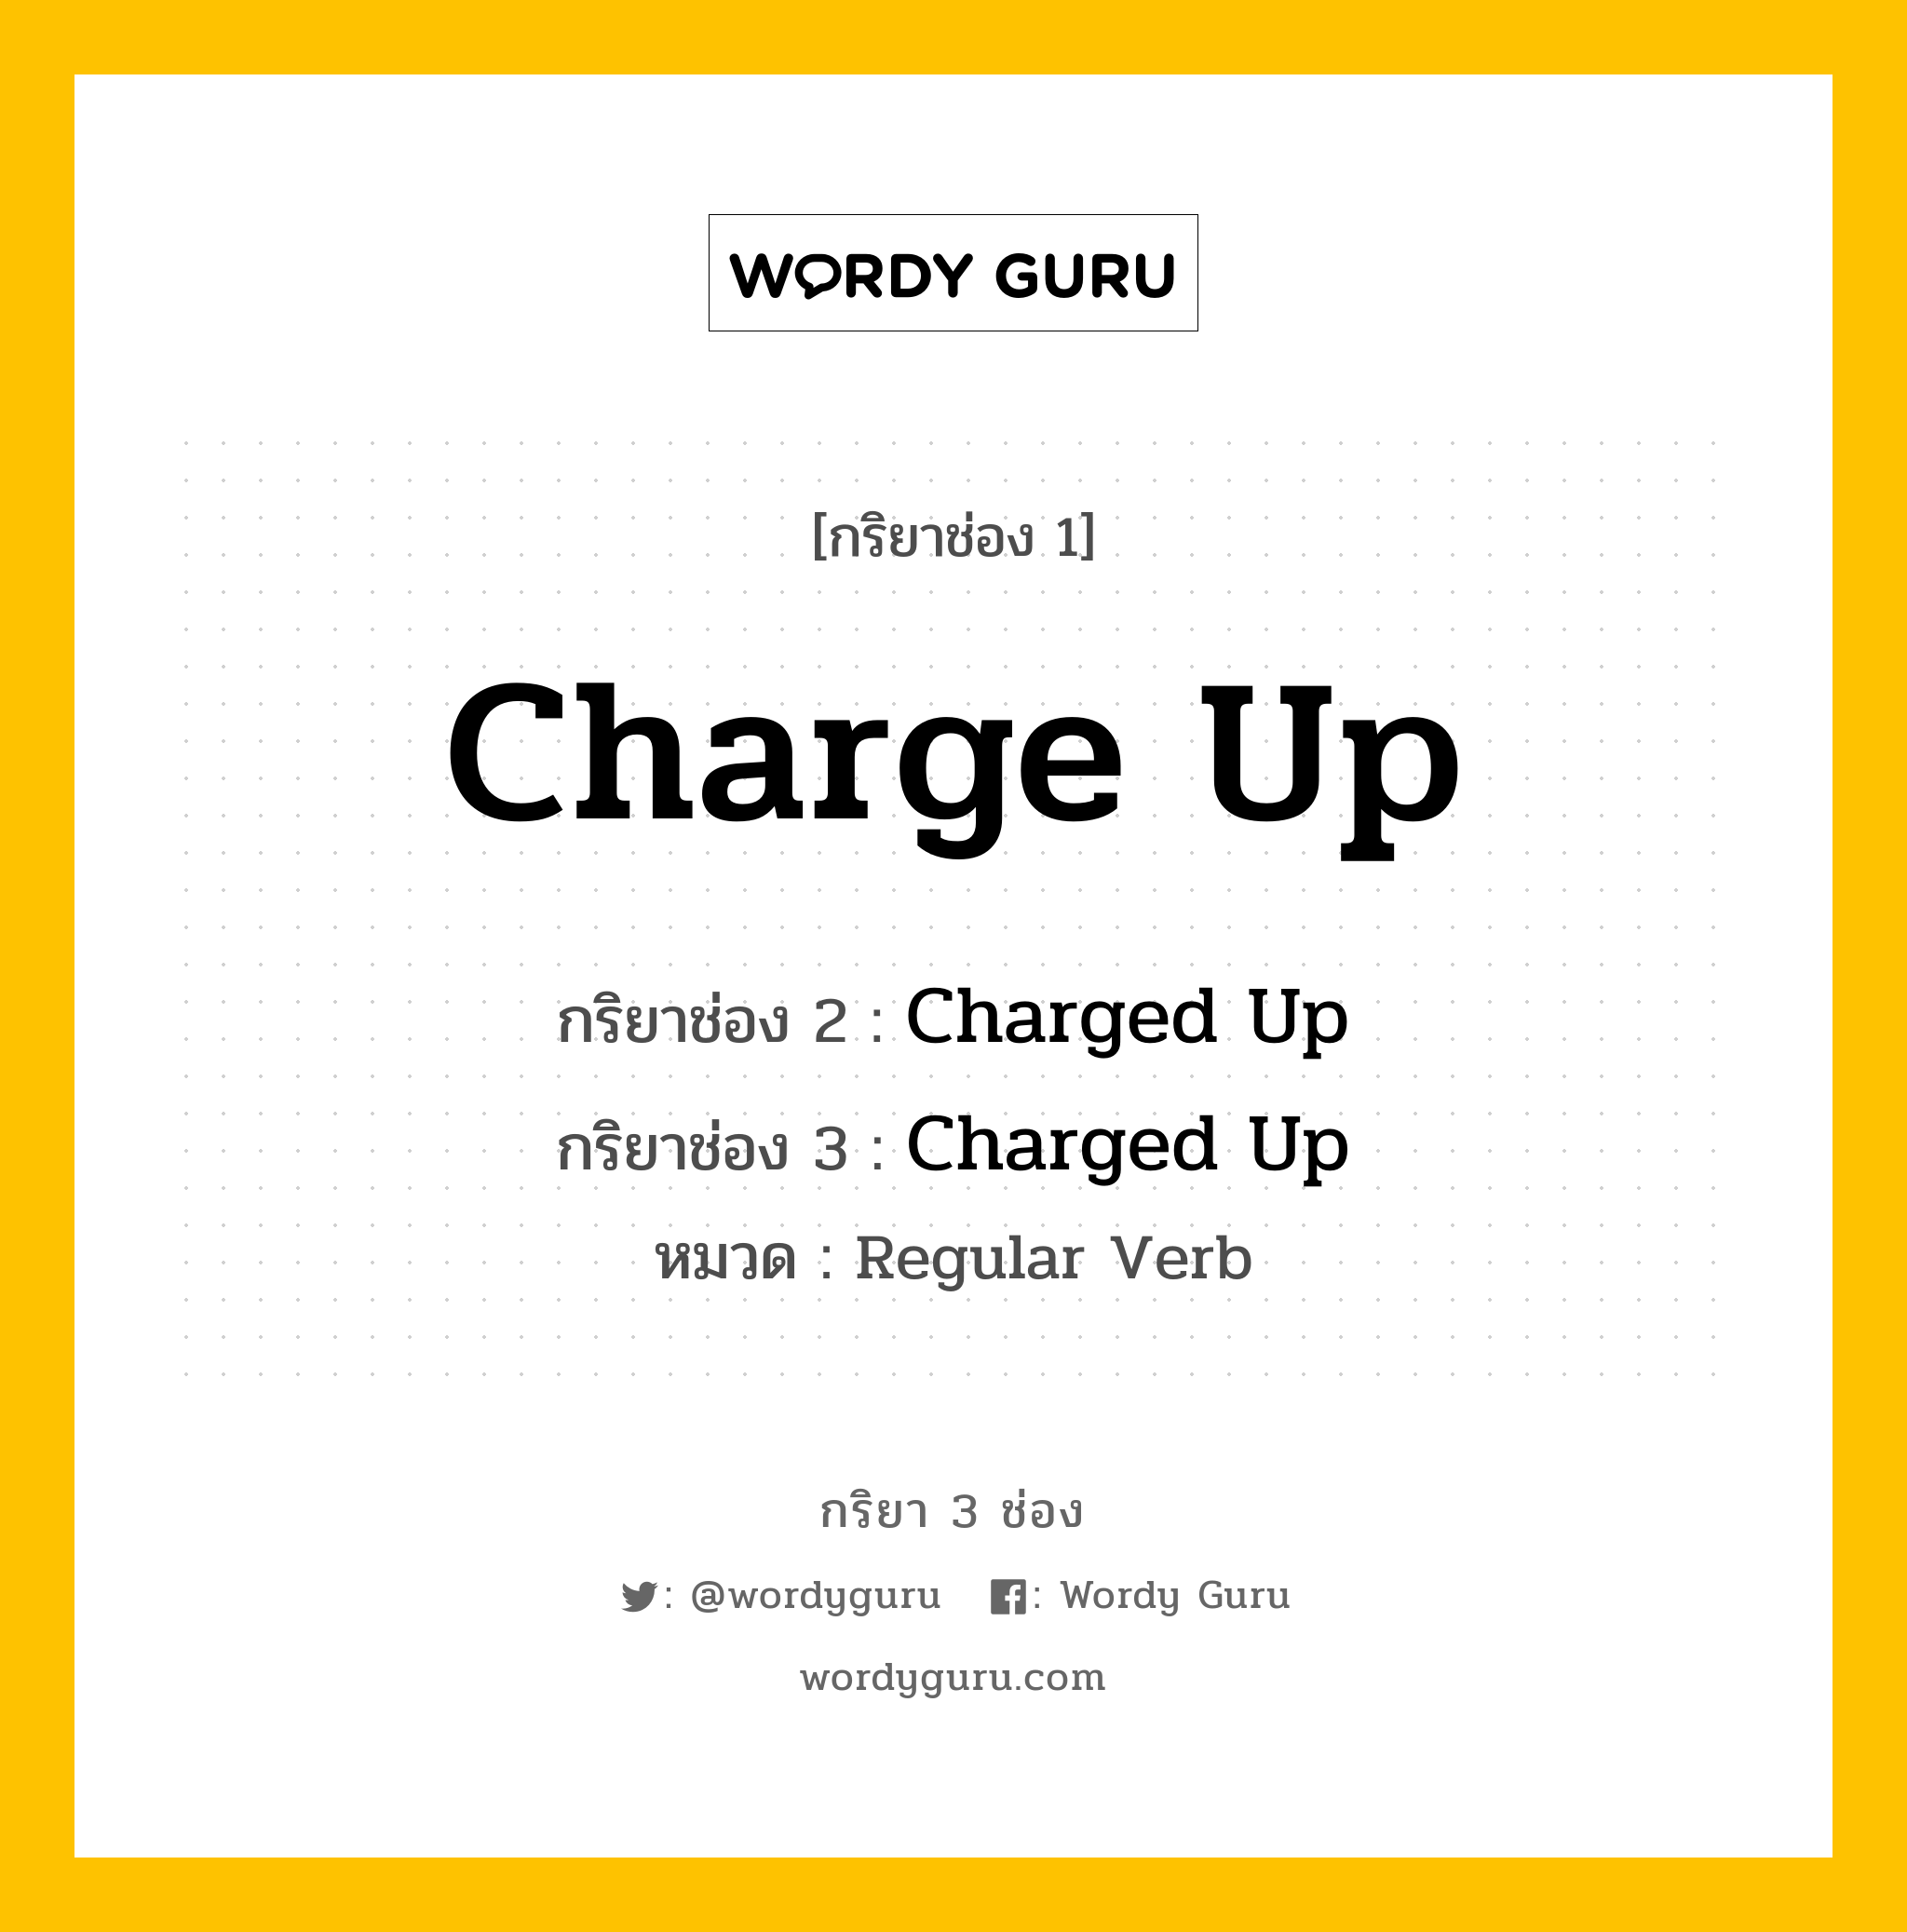 กริยา 3 ช่อง: Charge Up ช่อง 2 Charge Up ช่อง 3 คืออะไร, กริยาช่อง 1 Charge Up กริยาช่อง 2 Charged Up กริยาช่อง 3 Charged Up หมวด Regular Verb หมวด Regular Verb